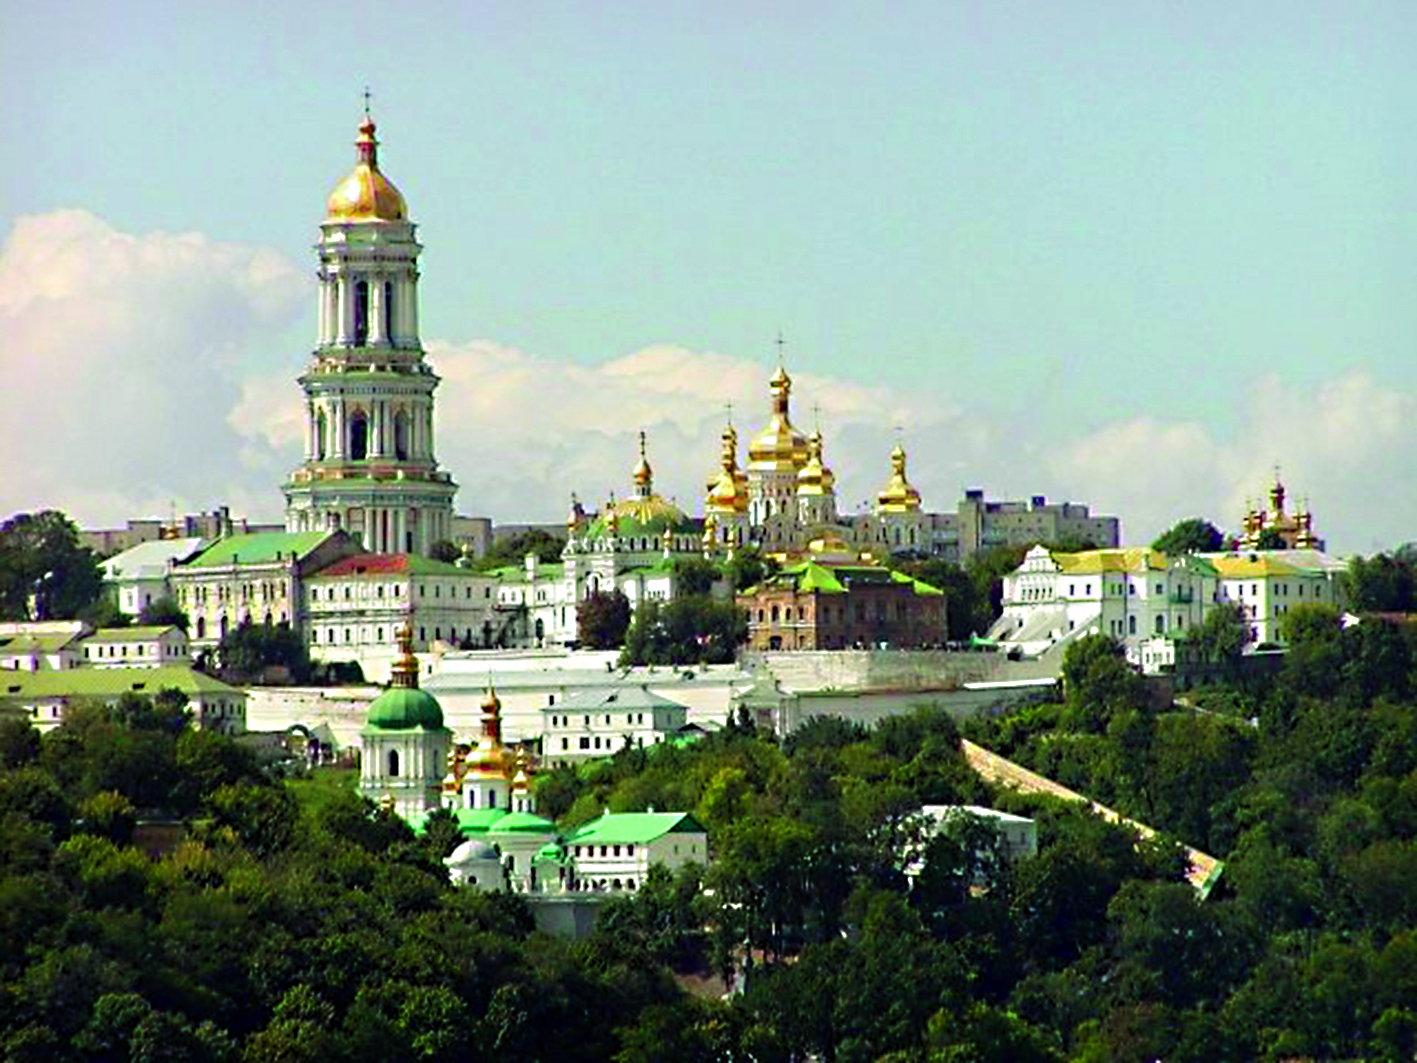 Киево-Печерский монастырь